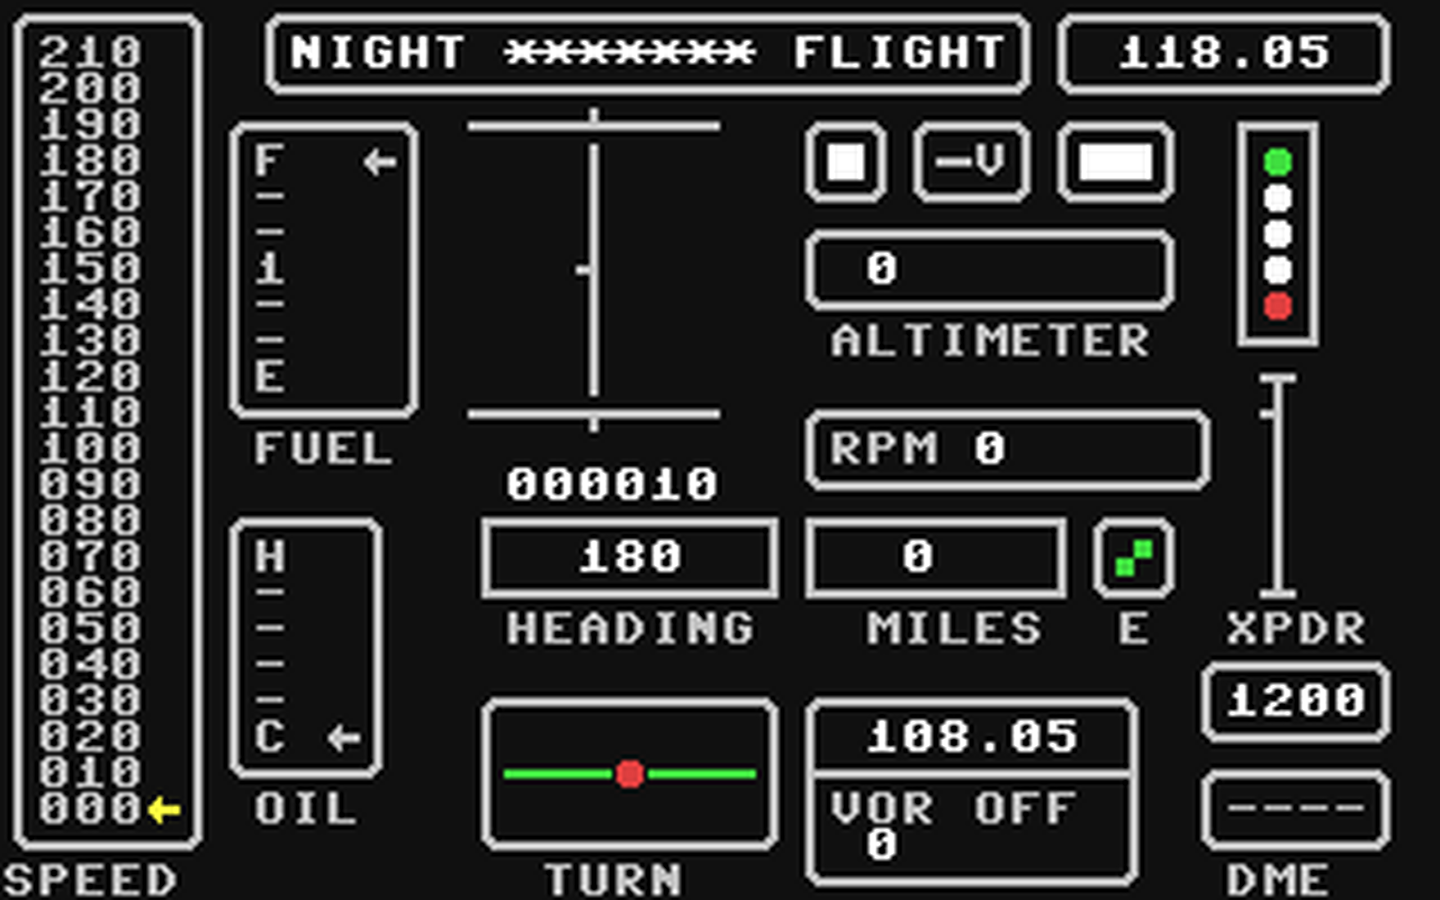 C64 GameBase Night_Flight (Public_Domain) 1985